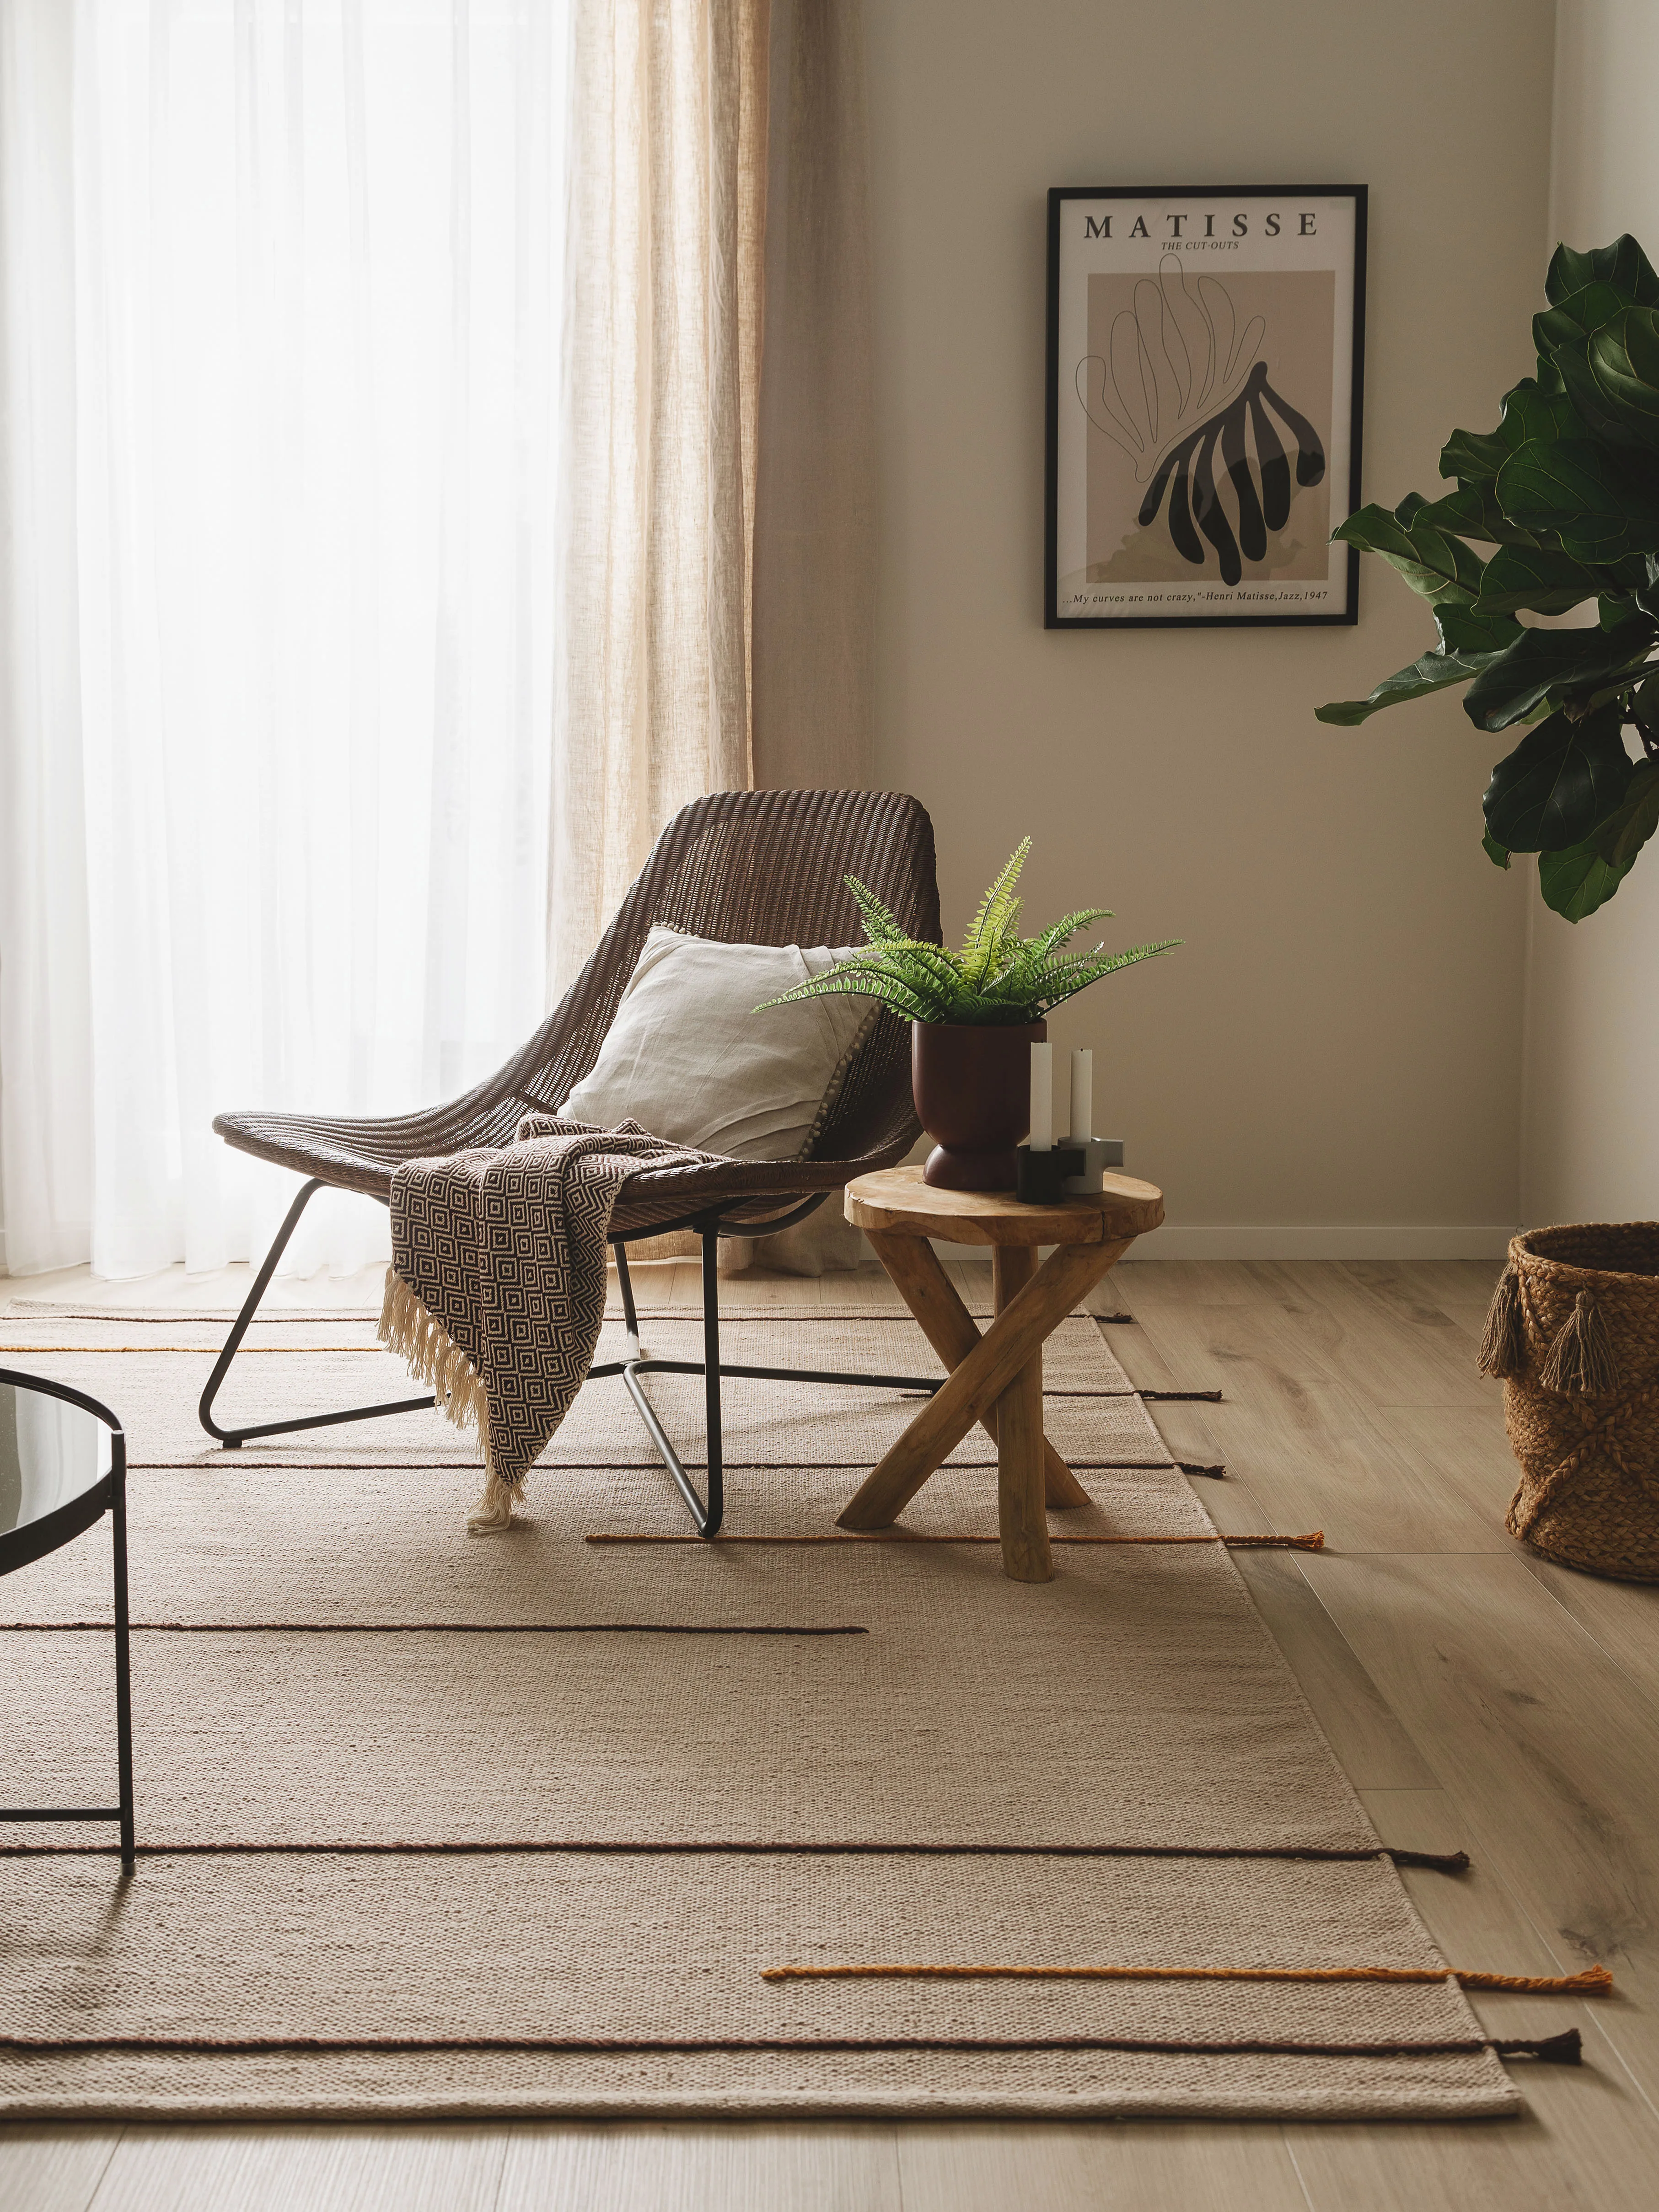 Leseecke im Wohnzimmer mit einem gemütlichem Sessel inklusive Kissen und Decke, einem braunen Beistelltisch auf dem eine Pflanze steht und einem großen Teppich